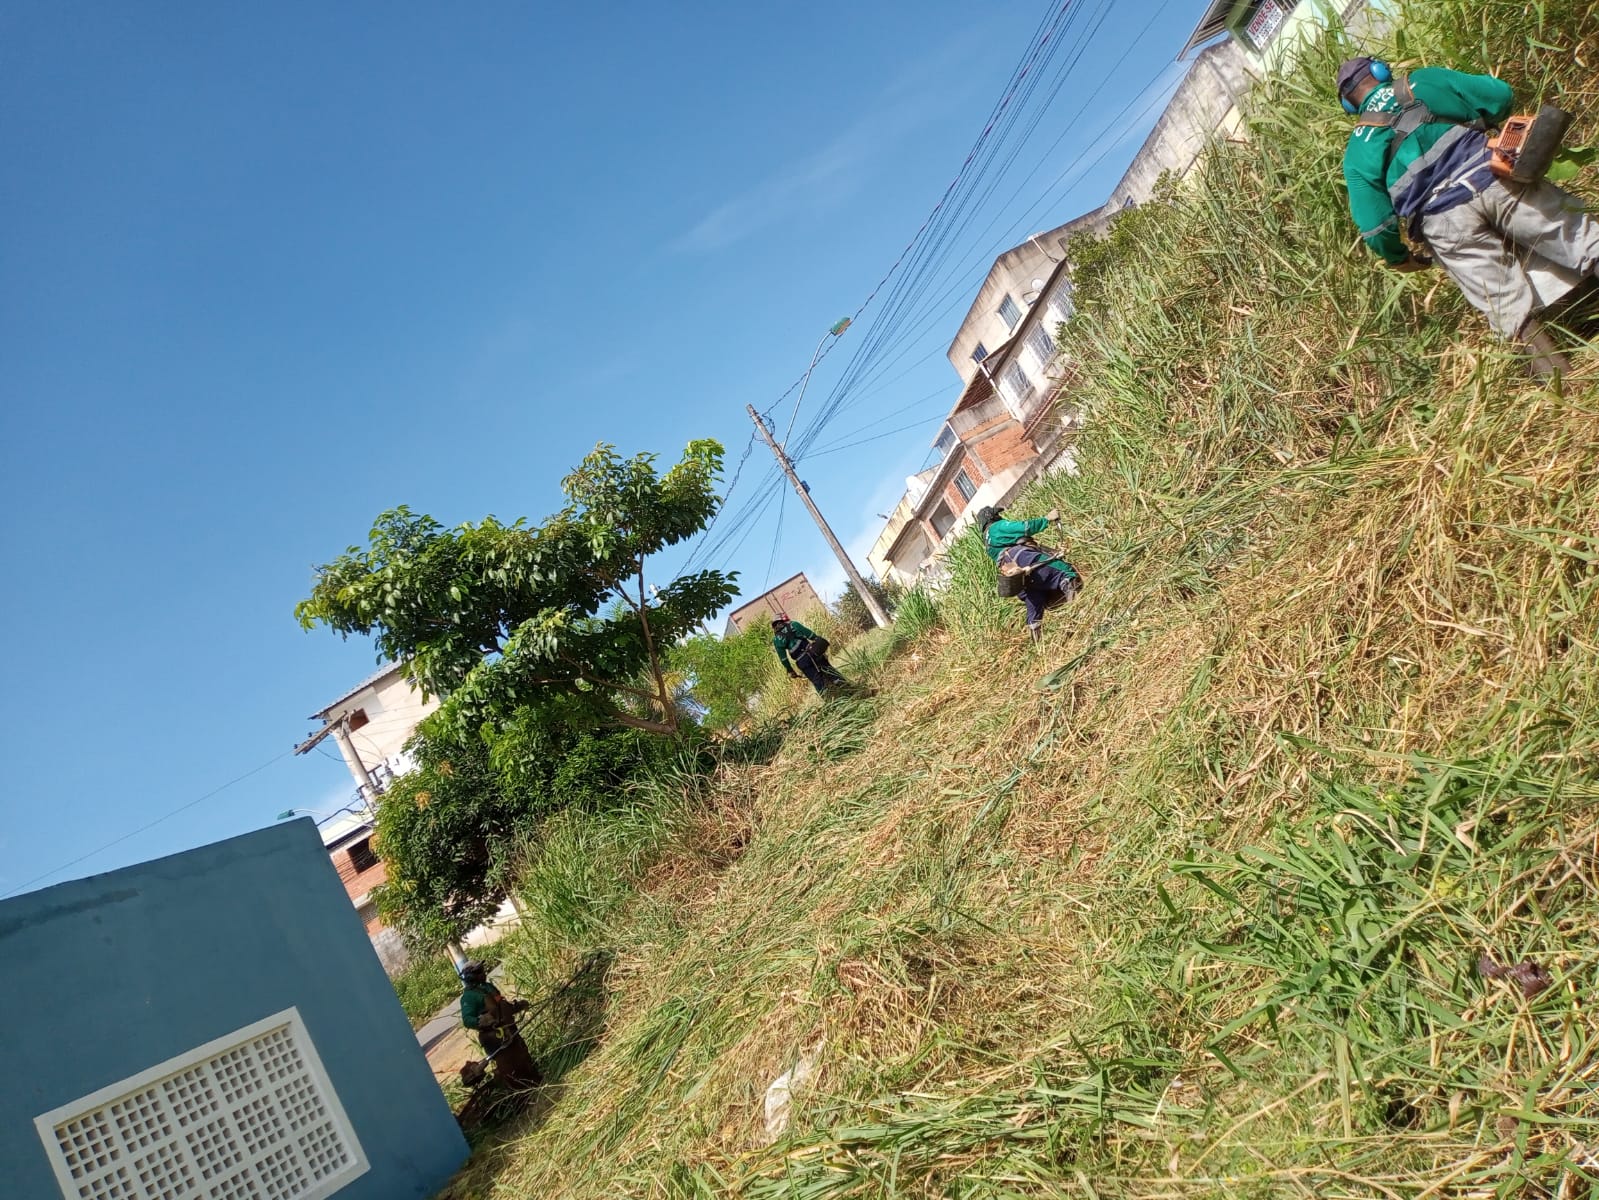 Equipes da Prefeitura de Cariacica realizam mutirão para limpeza em bairros do município